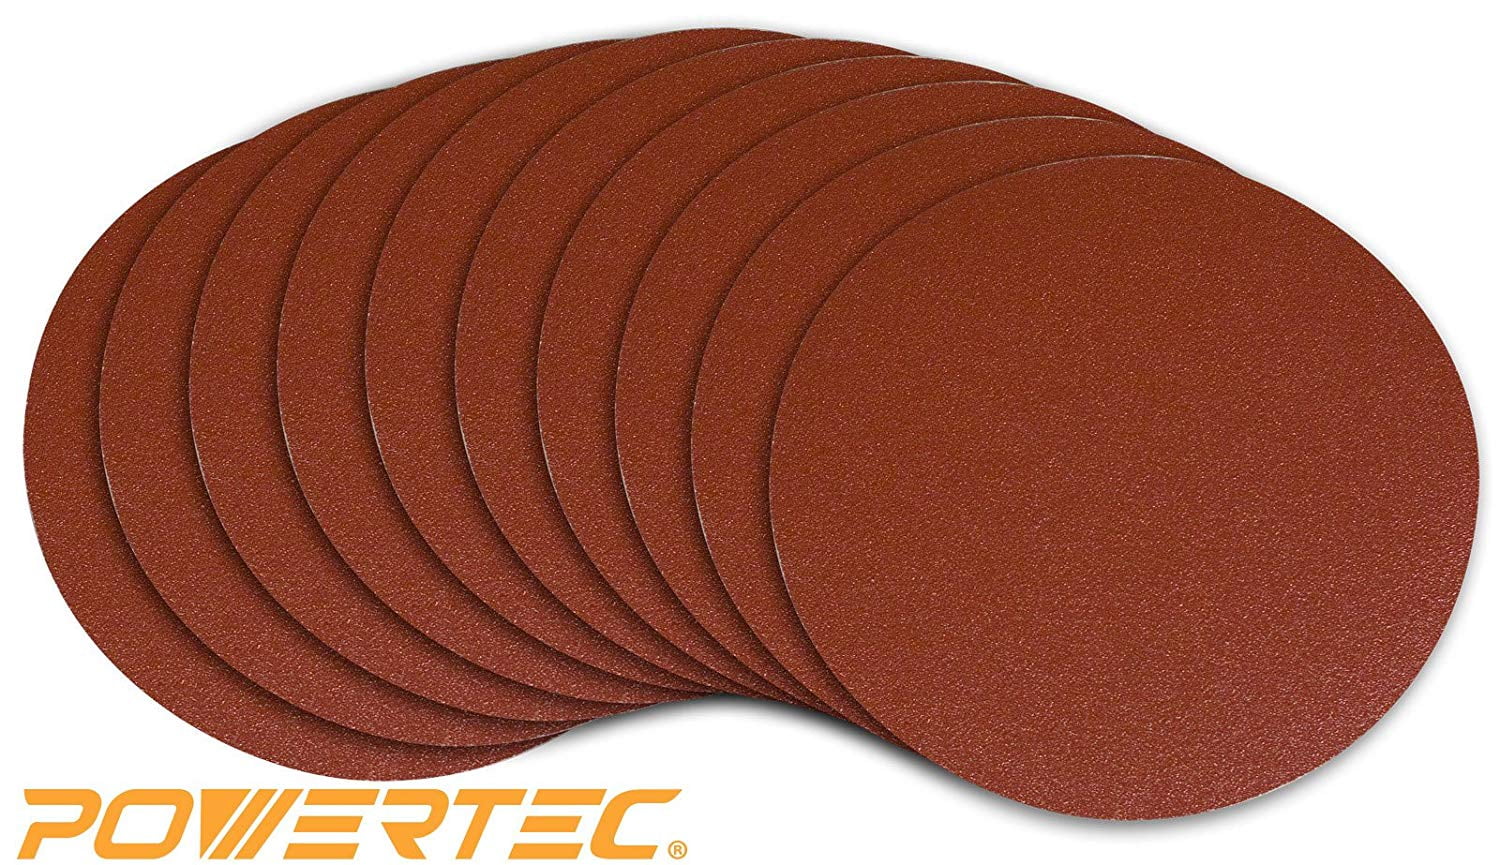 Powertec 110560 8-inch PSA 120 Grit Aluminum Oxide Adhesive Sanding Disc for sale online 